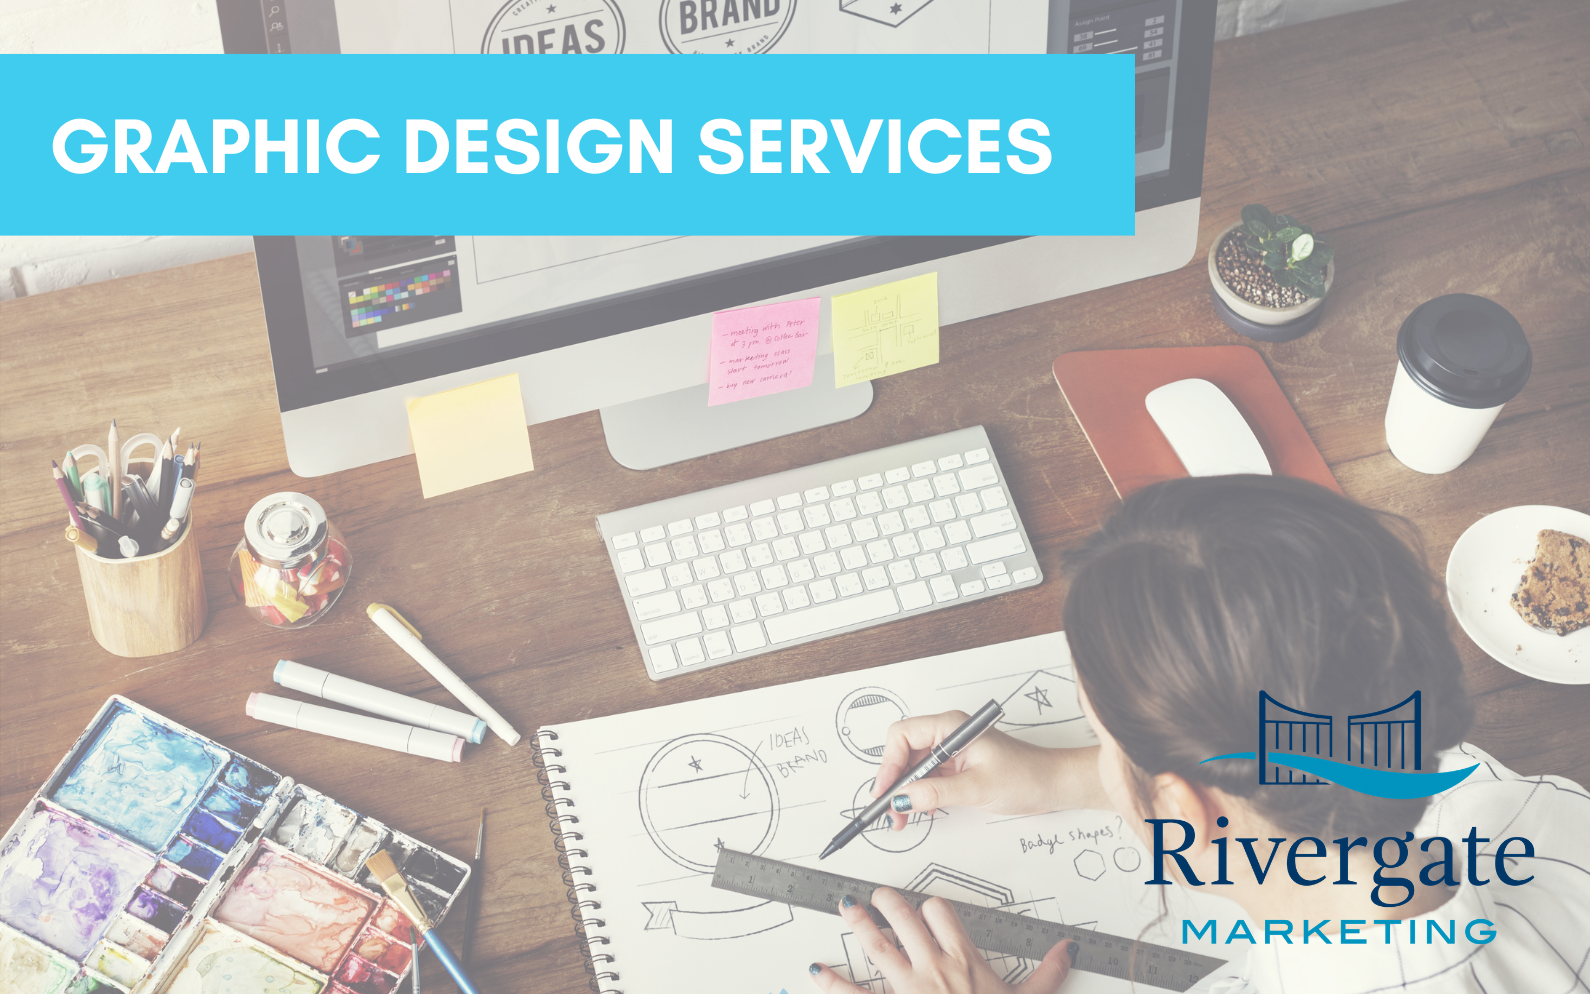 Rivergate marketing Graphic design services